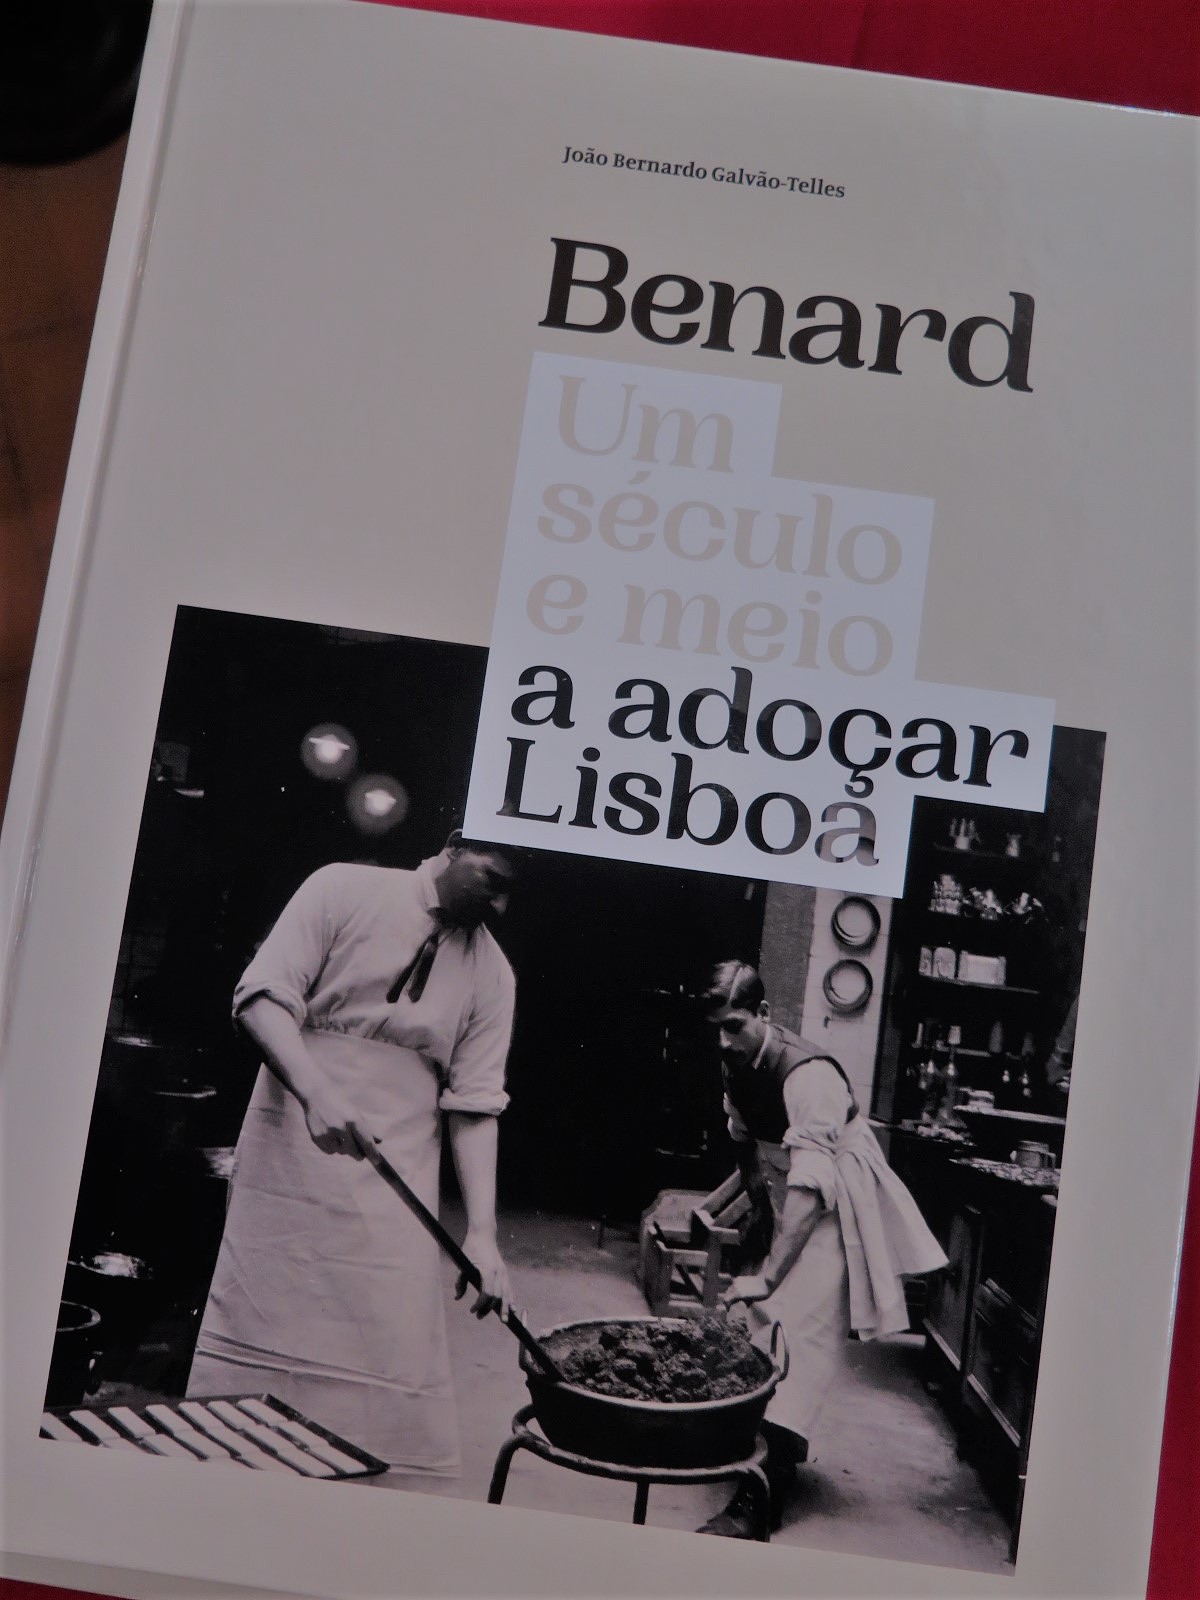 “BENARD - Um século e meio a adoçar Lisboa” de João Bernardo Galvão-Telles.